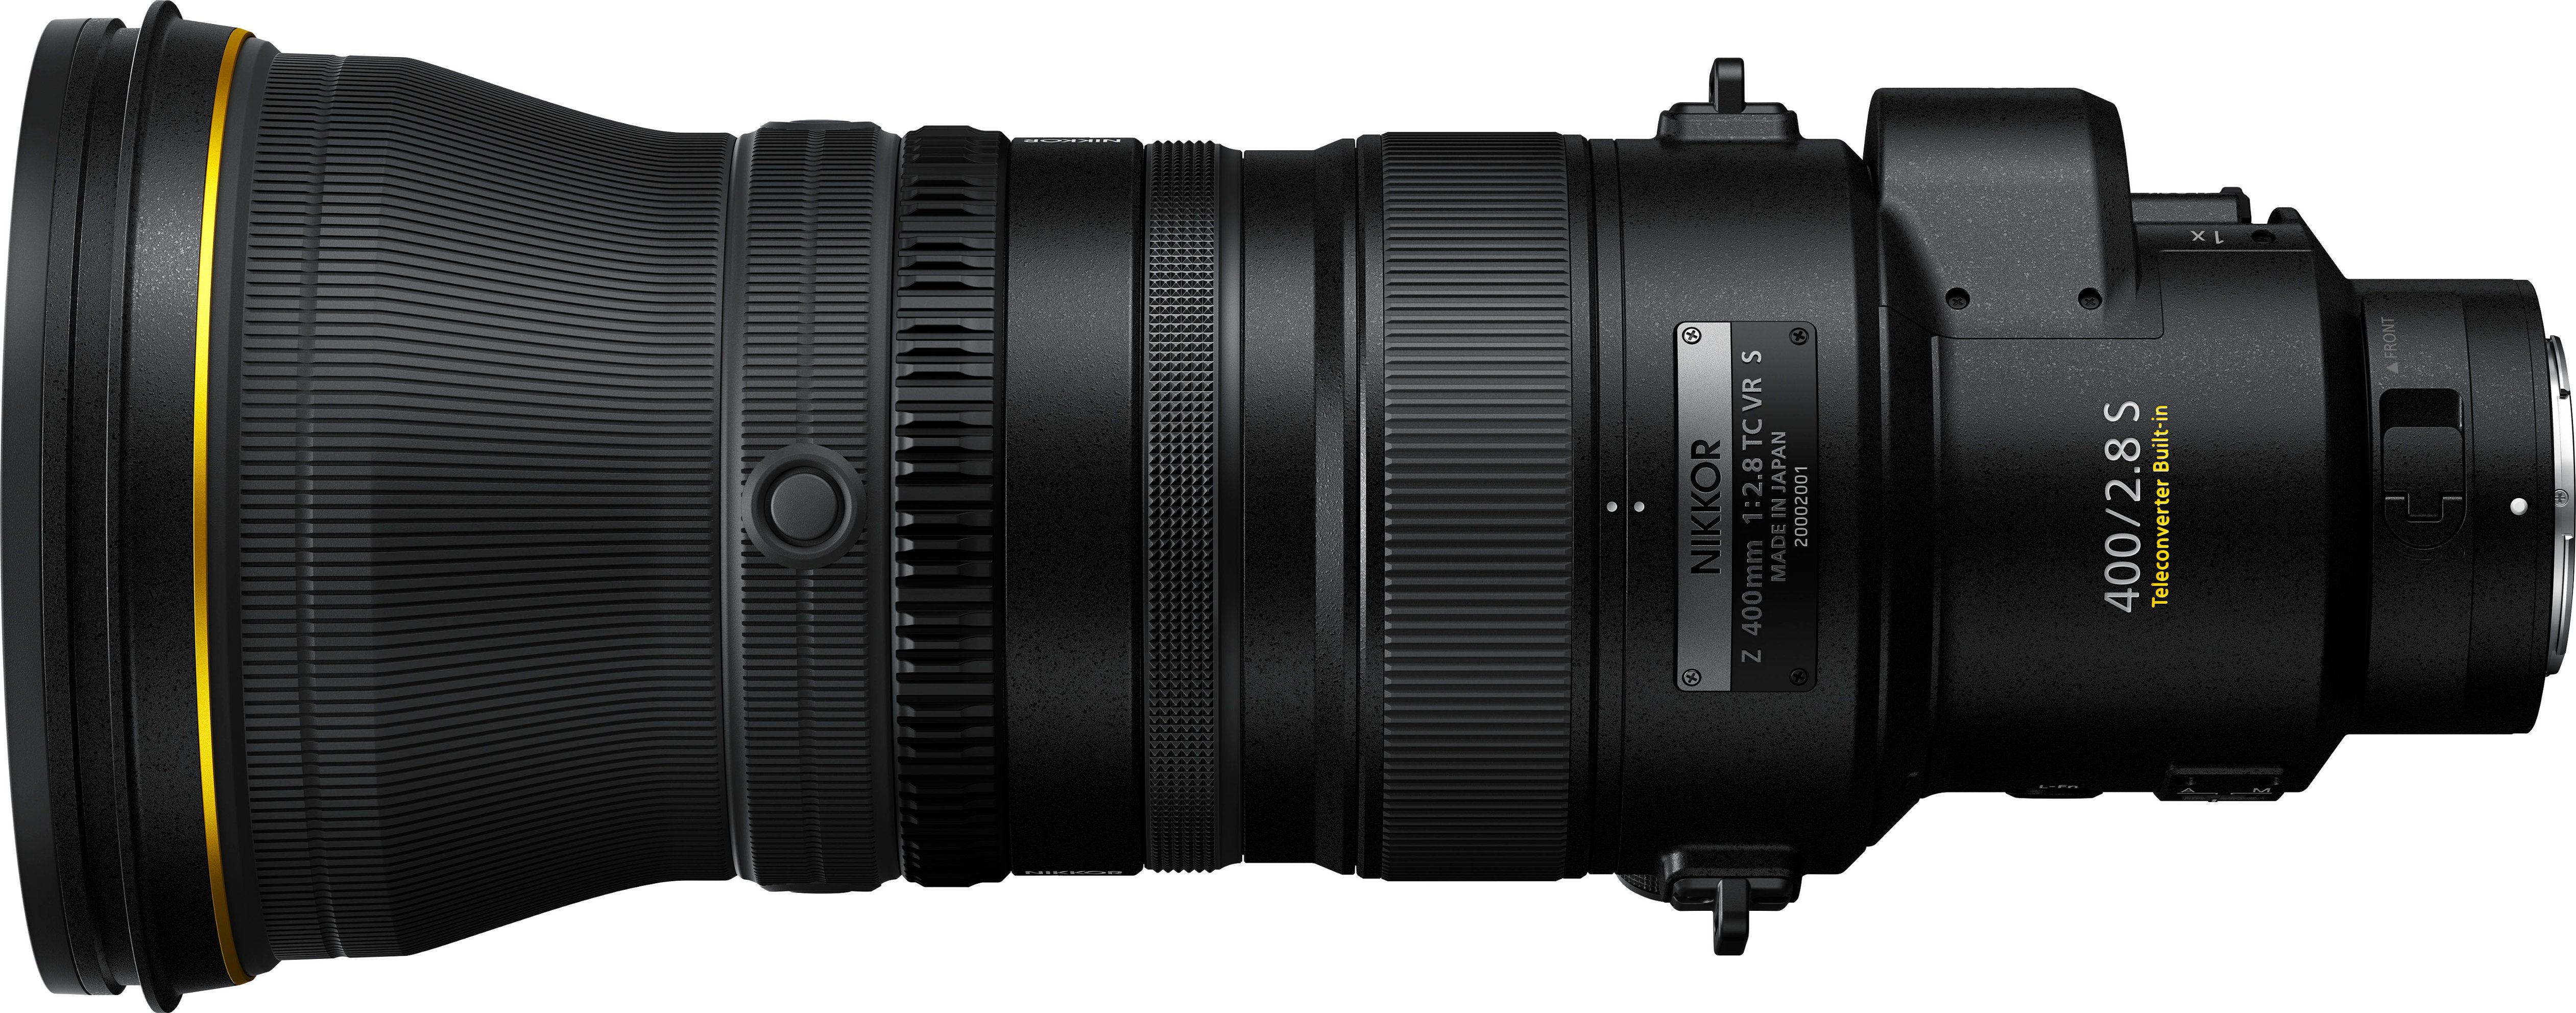 Left View: NIKKOR Z 400mm f/2.8 TC VR S Super-Telephoto Prime Lens for Nikon Z-Series Mirrorless Cameras - Black